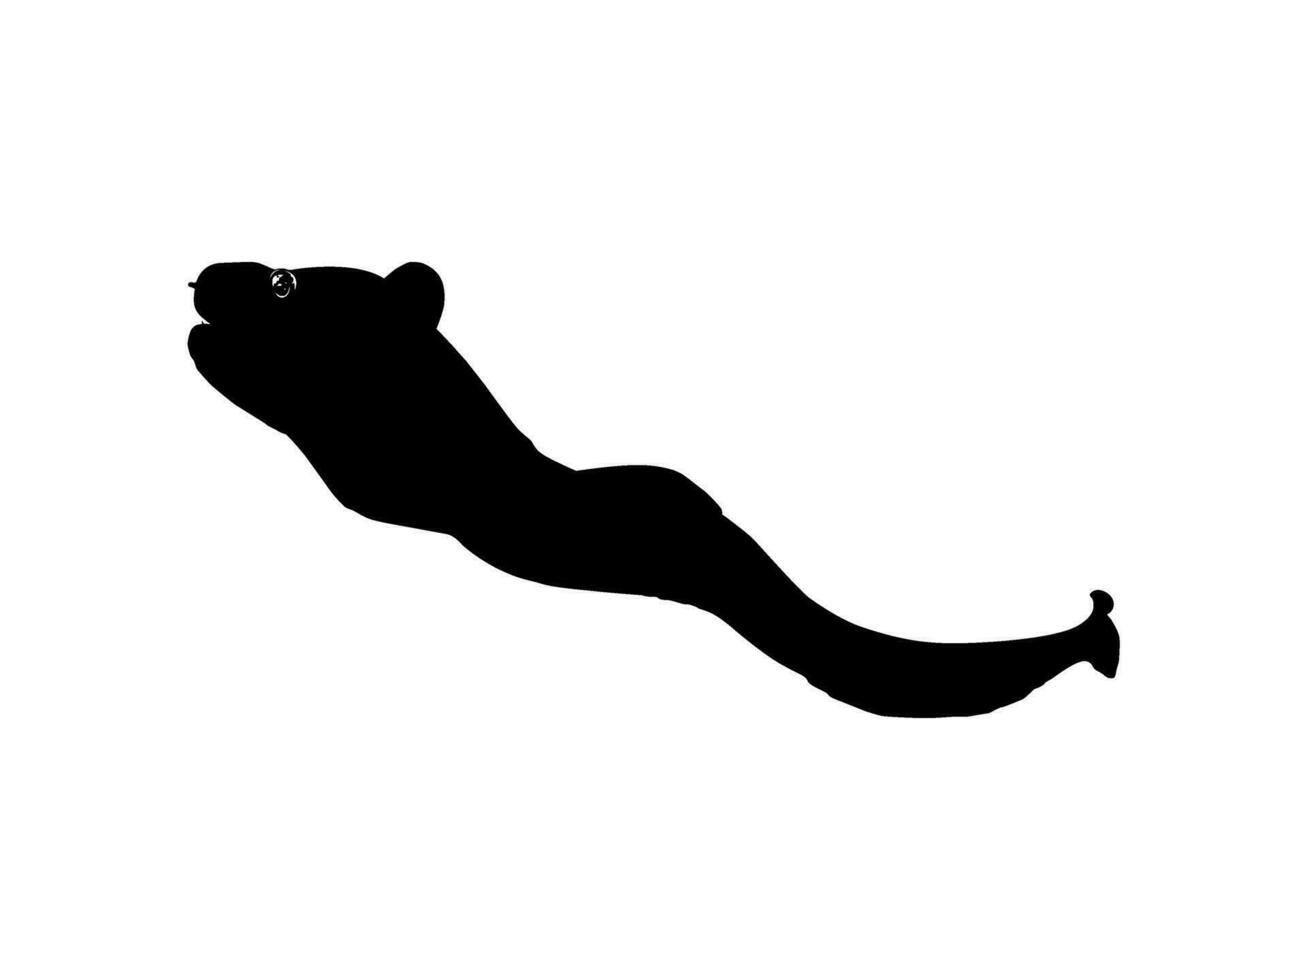 silueta de el moray anguilas o muráenidae, para Arte ilustración, logo tipo, pictograma o gráfico diseño elemento. vector ilustración